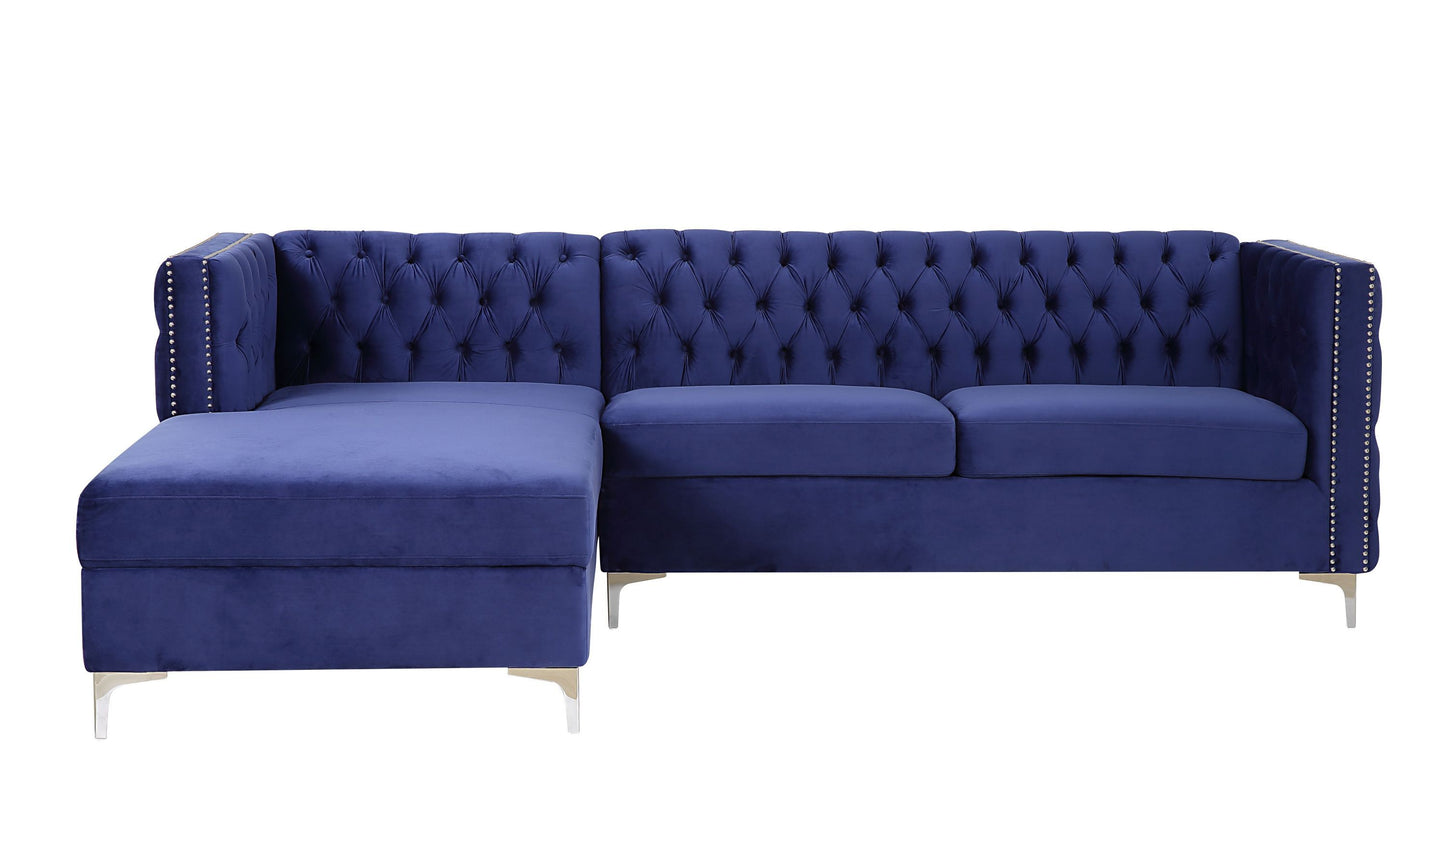 ACME Sullivan Sectional Sofa, Navy Blue Velvet 55490 - Enova Luxe Home Store